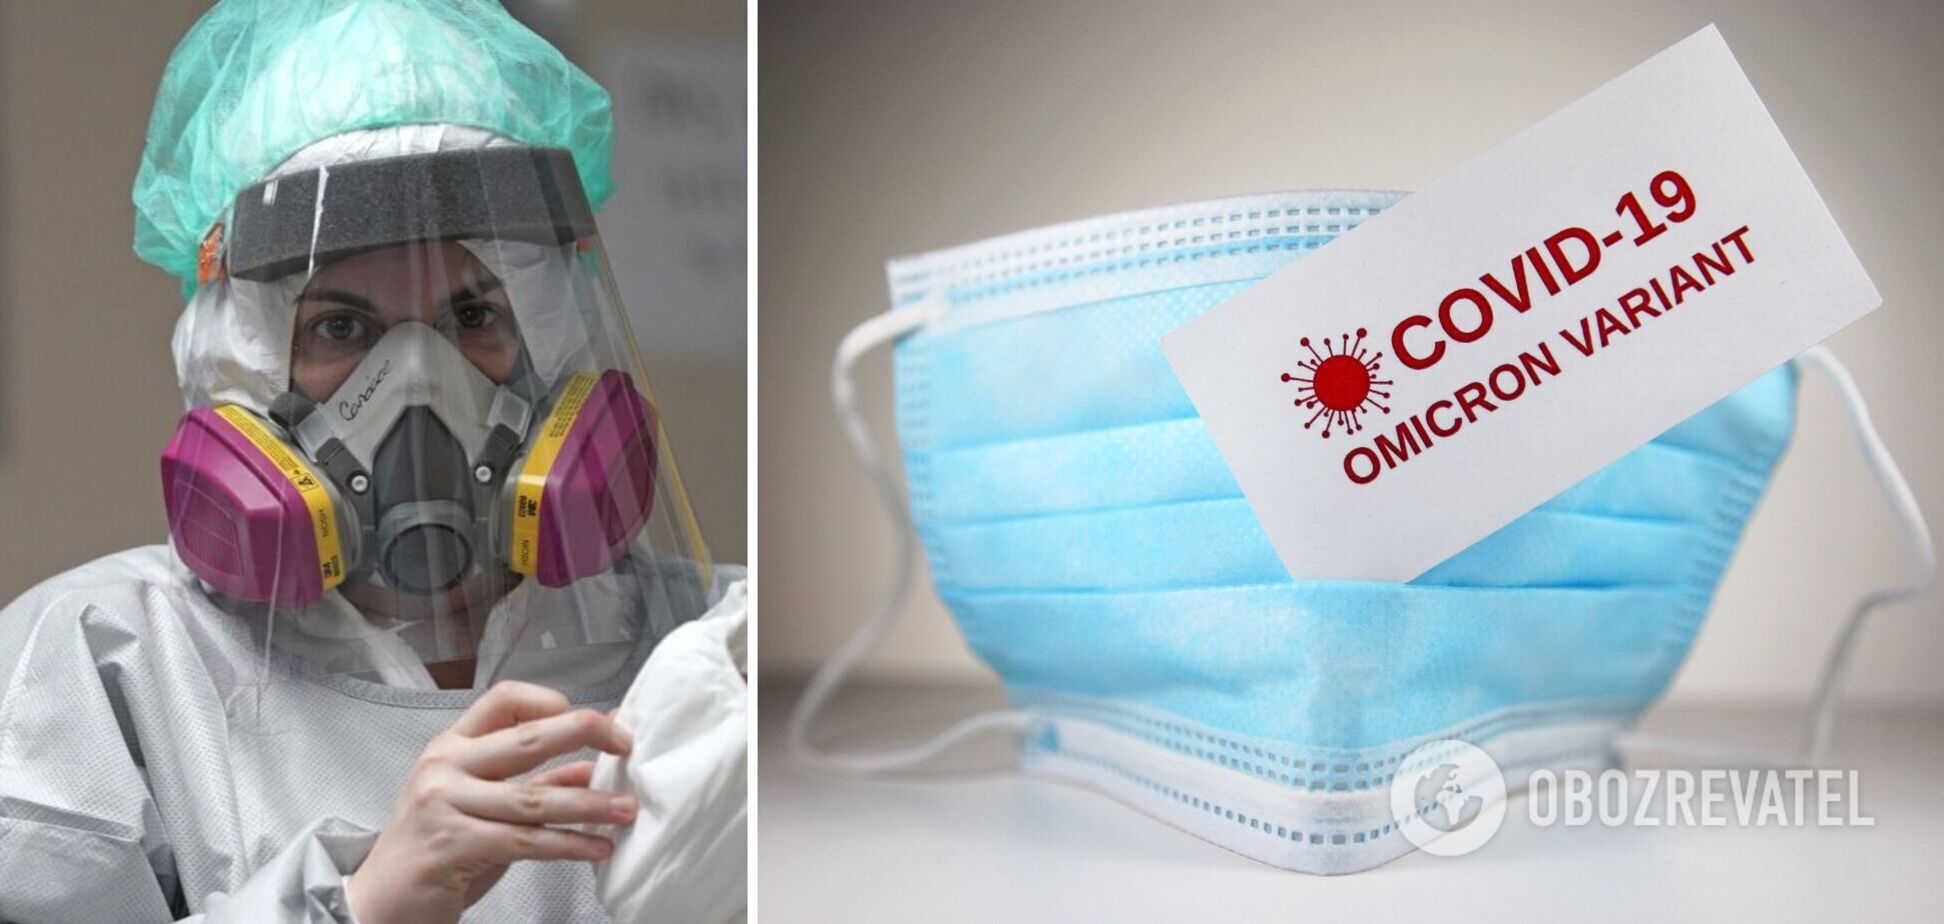 Хорошая новость: Омикрон, возможно, переведет коронавирус в привычный сезонный грипп